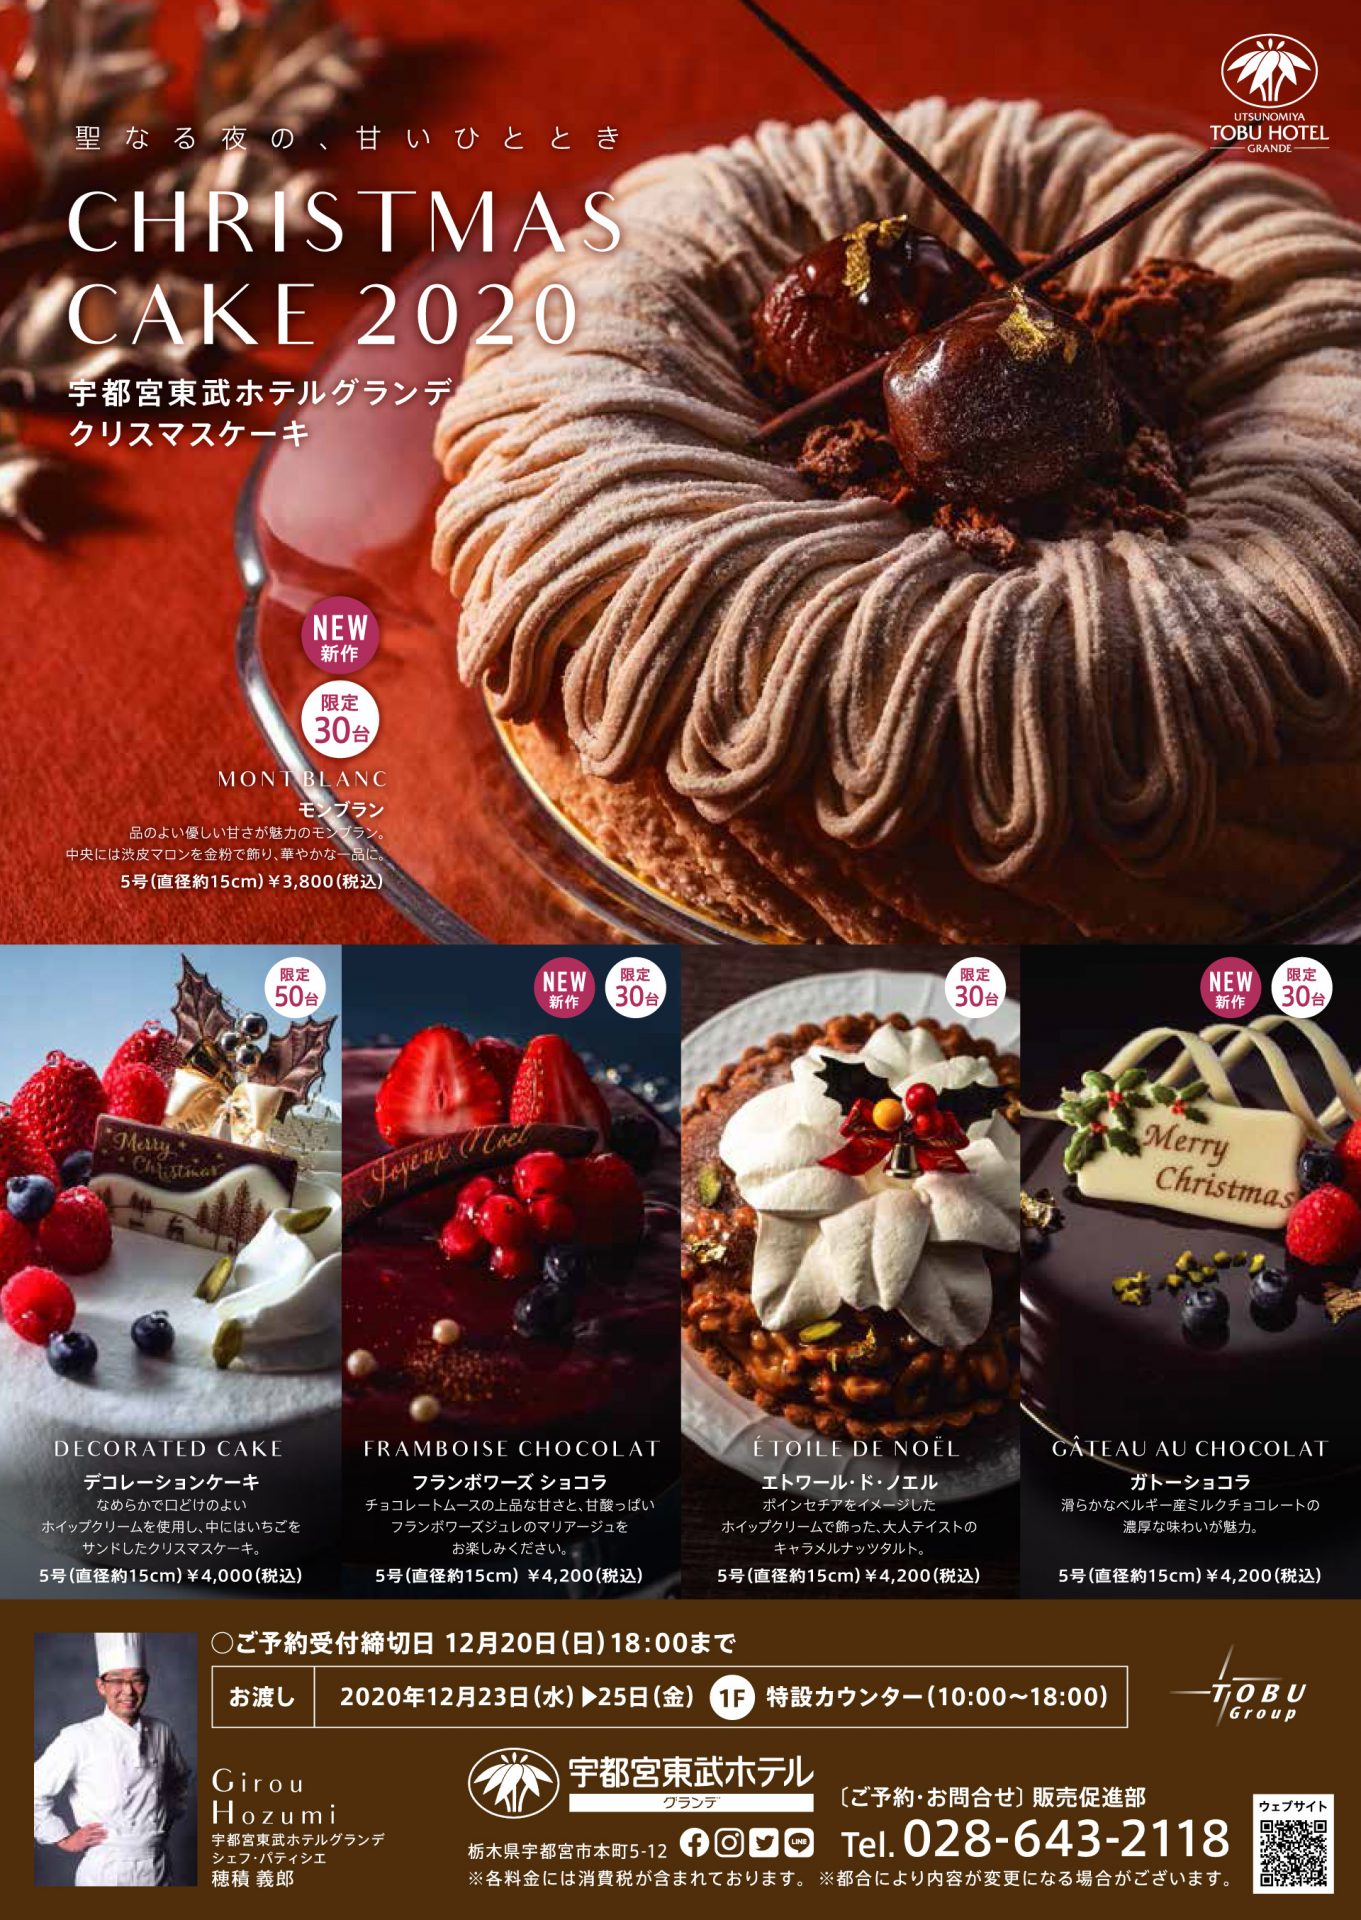 ご予約承り中 クリスマスケーキ 聖なる夜の 甘いひととき 重要なお知らせ 公式 宇都宮東武ホテル